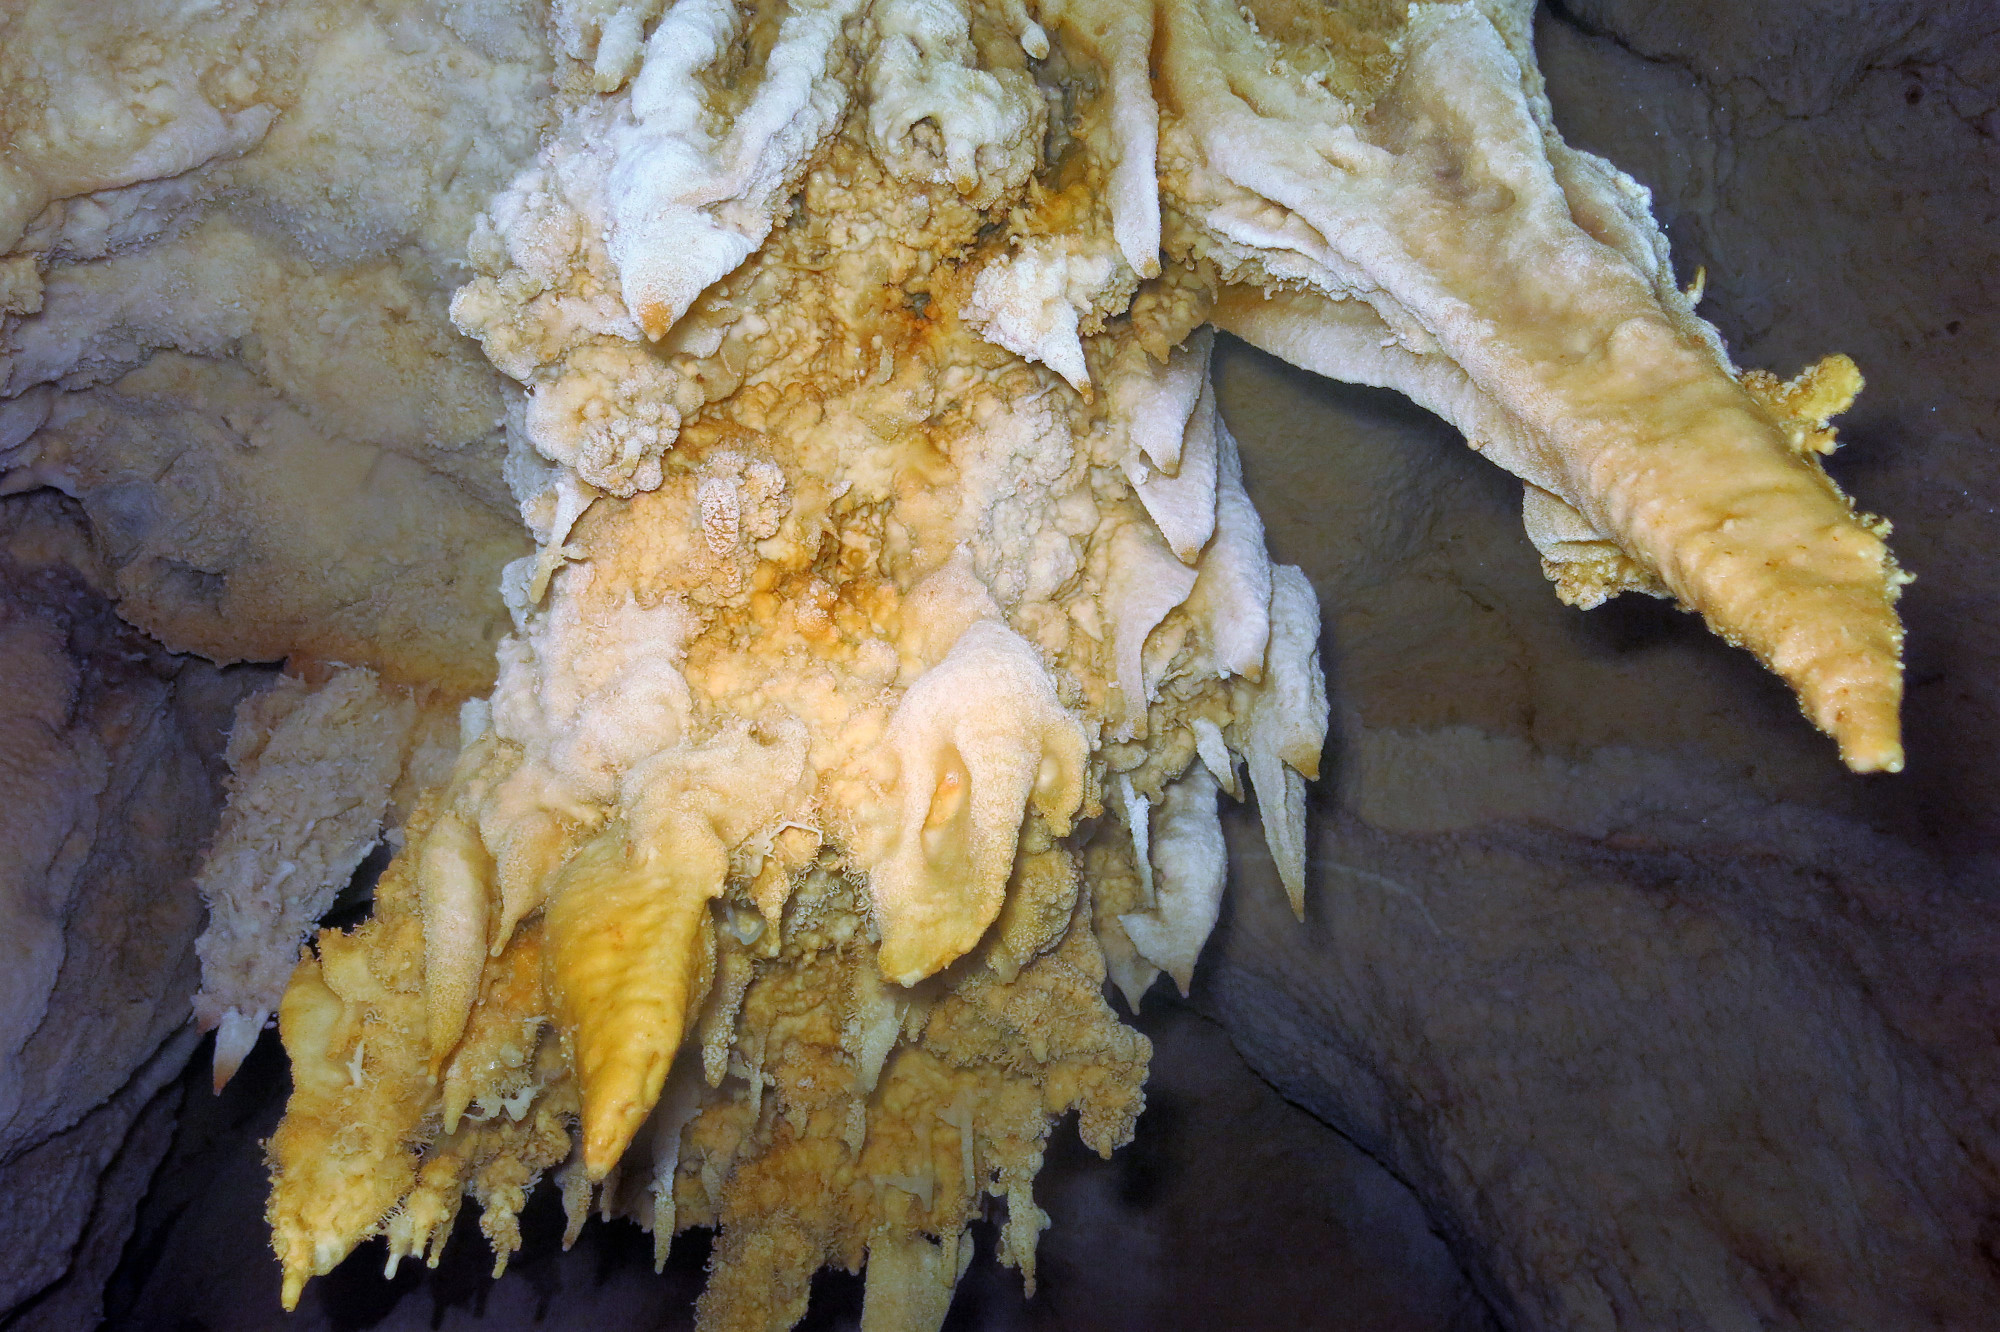 Chandelier Cave, Palau